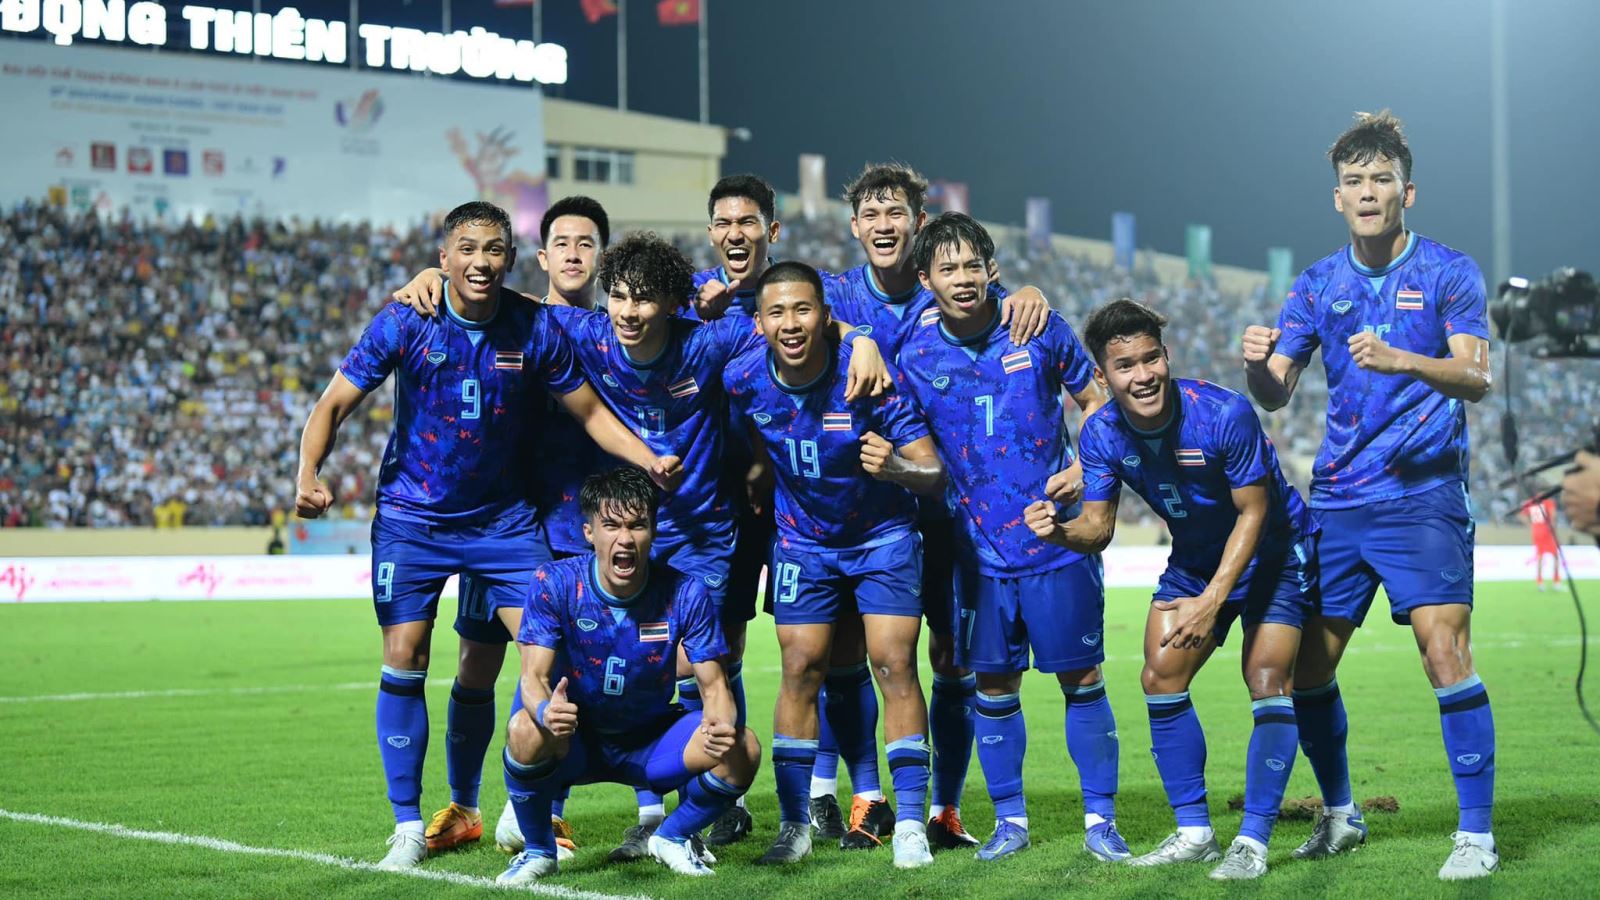 U23 Thái Lan 5-0 U23 Singapore: Sao trẻ thi nhau tỏa sáng, người Thái thị uy sức mạnh